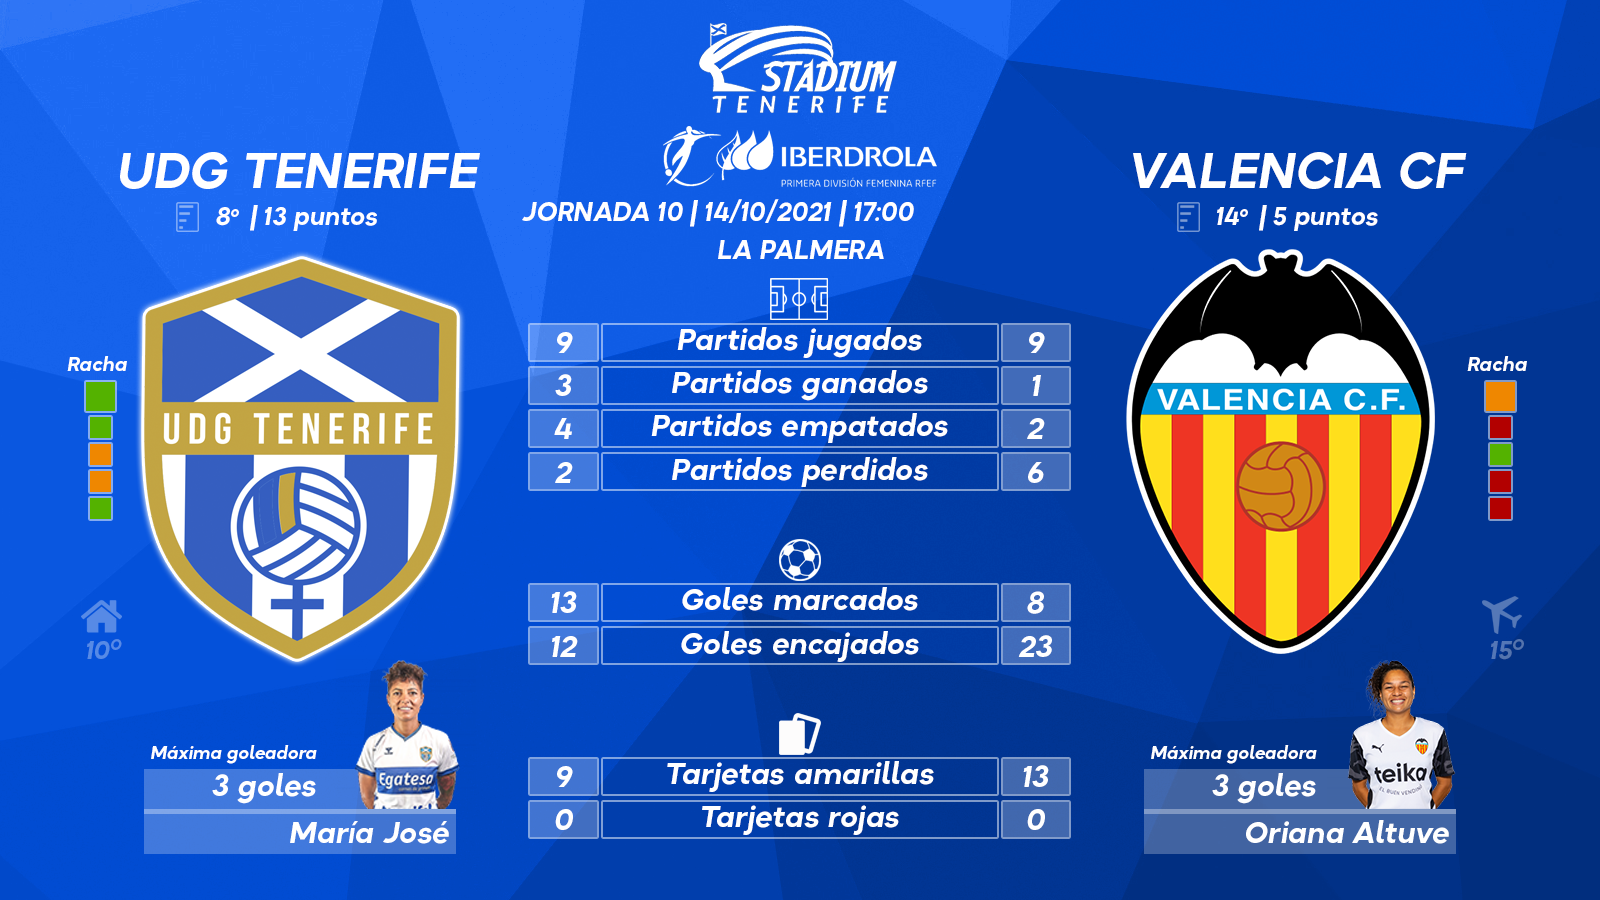 Previa del UDG Tenerife - Valencia CF (10ªJ.-Primera Iberdrola)